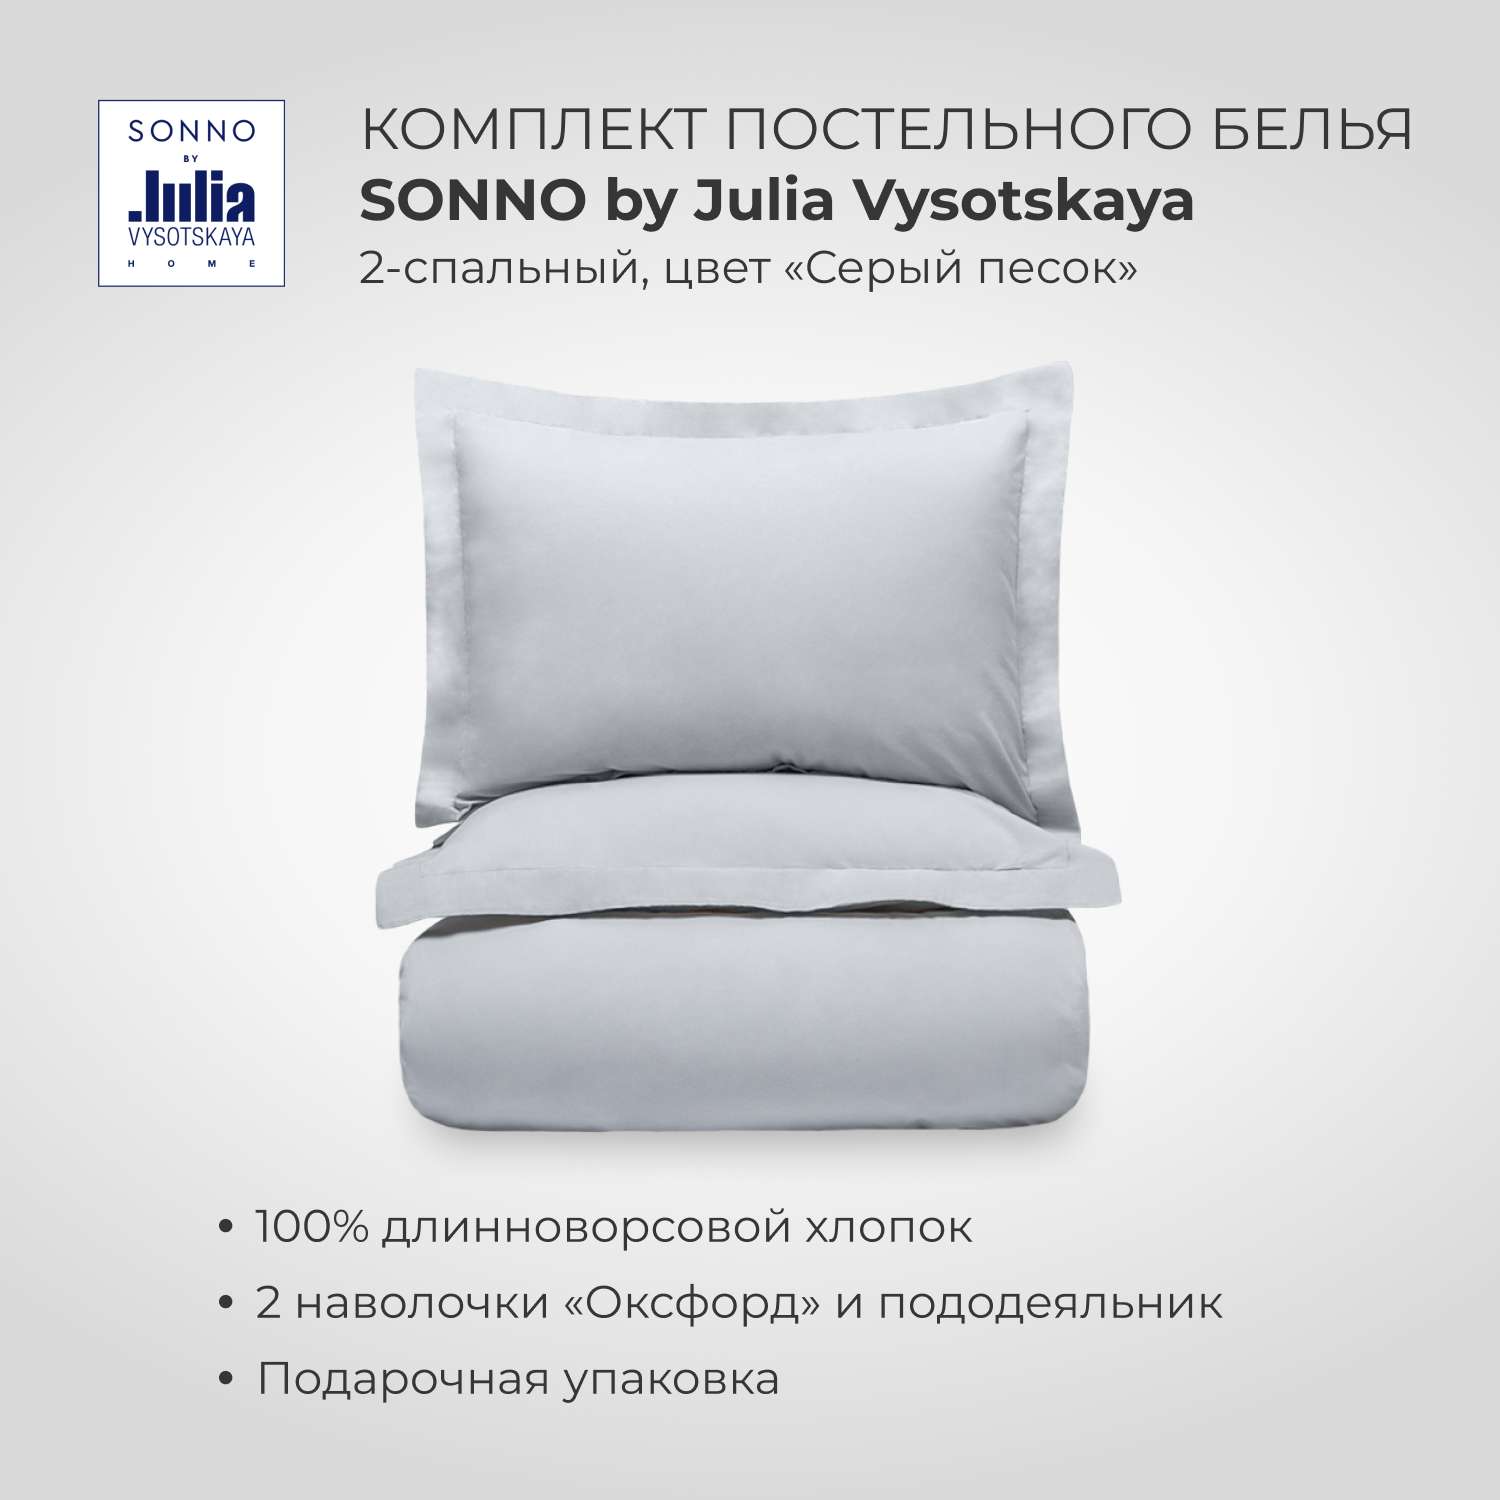 Комплект постельного белья SONNO by Julia Vysotskaya 2-спальный цвет Серый песок - фото 1